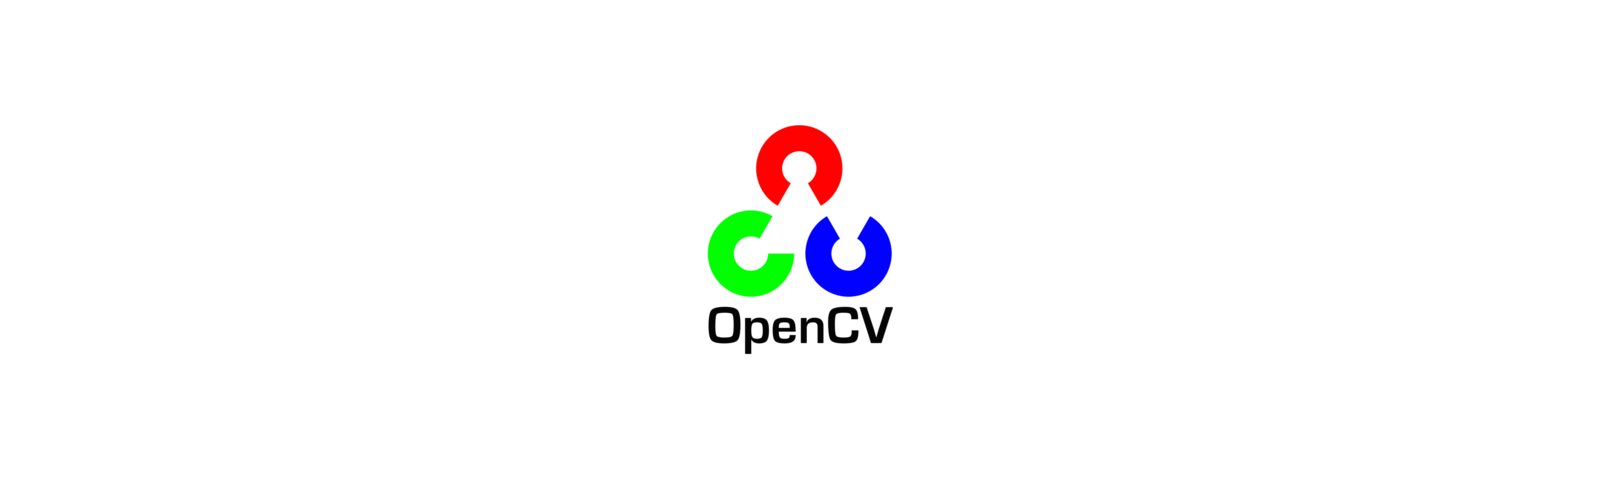 手动安装OpenCV下的IPPICV加速库